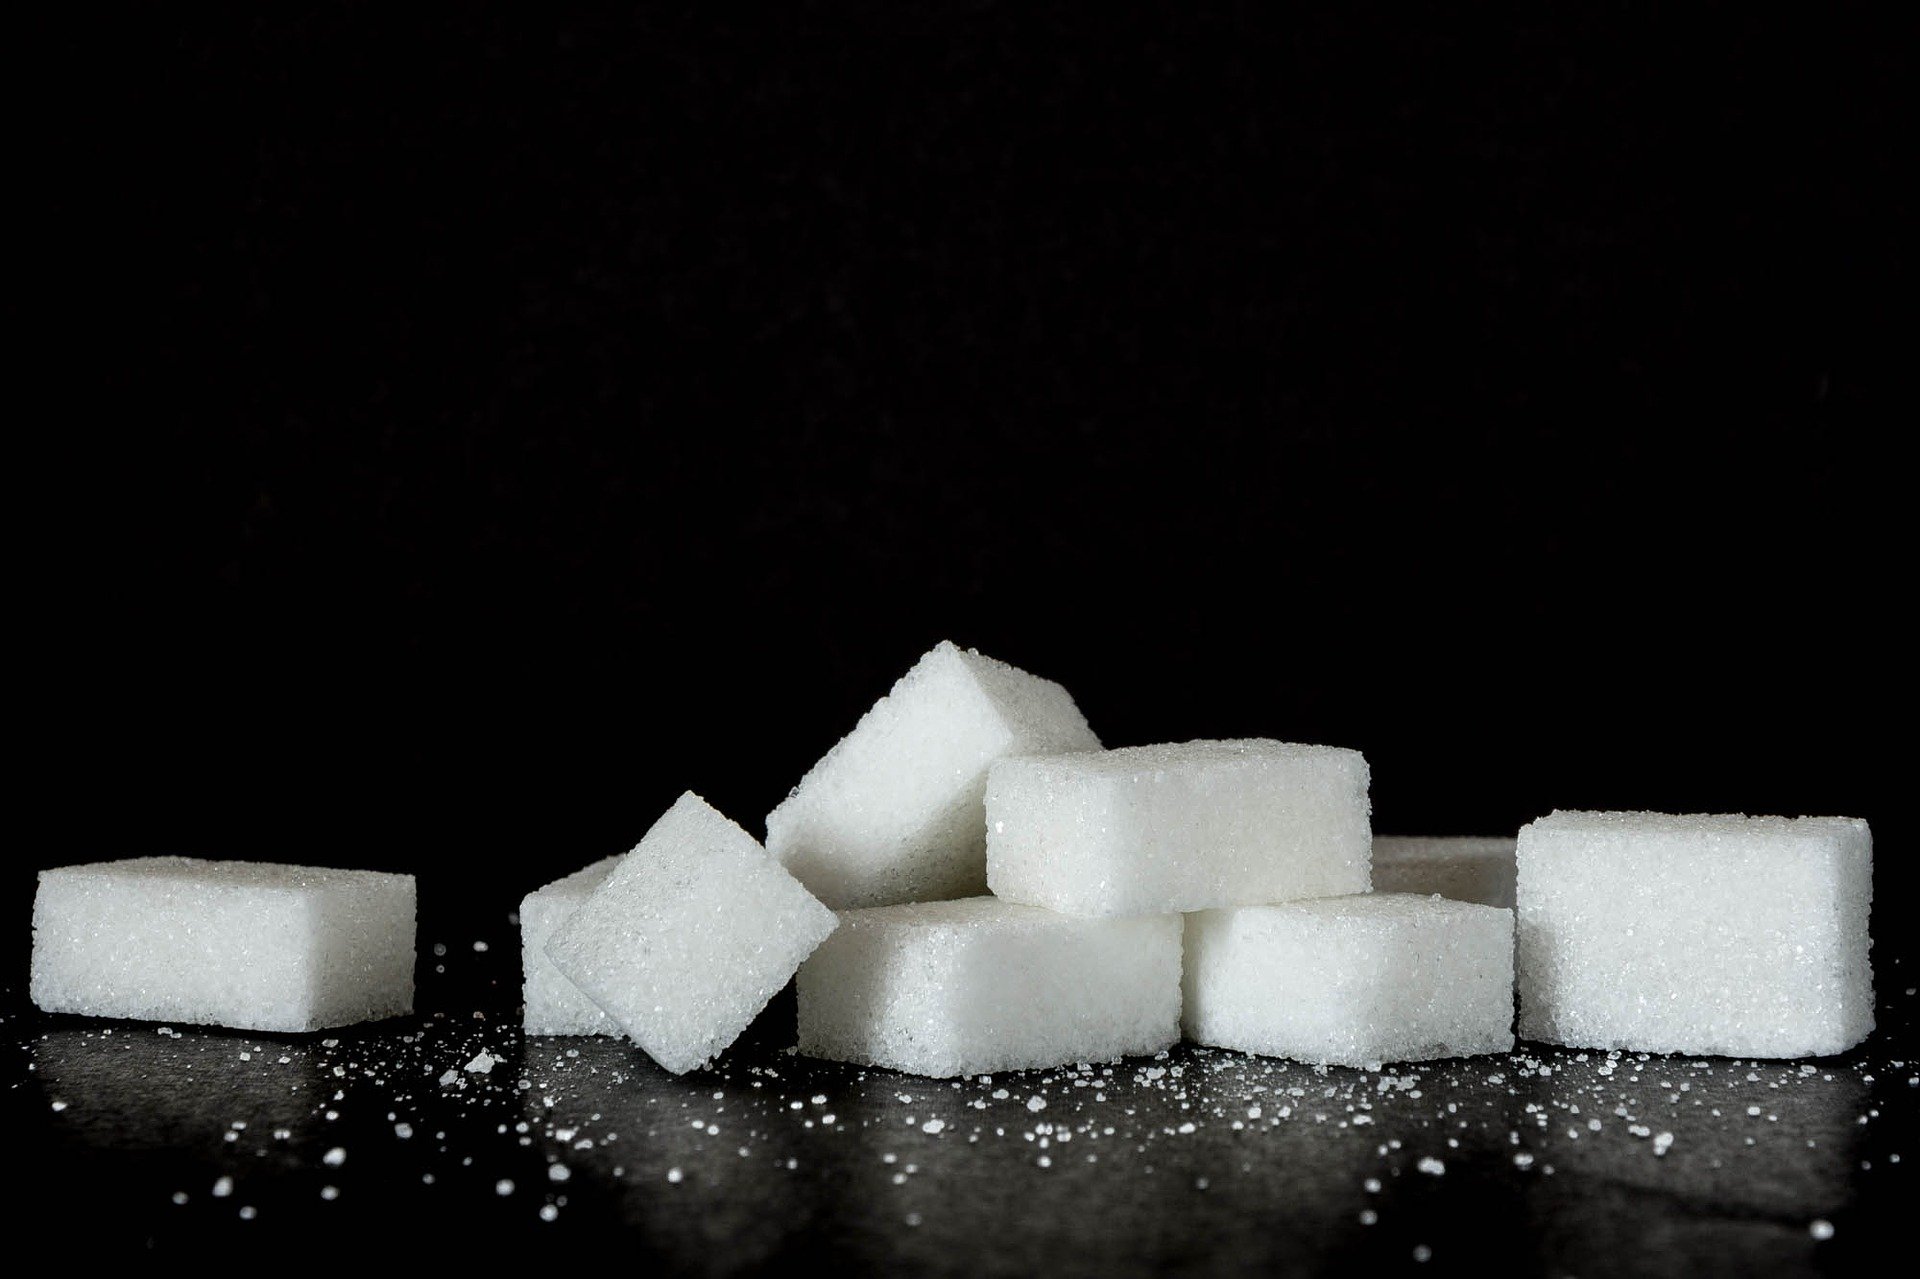  La récolte record du Brésil conduira à un excédent mondial de sucre en 2020/21